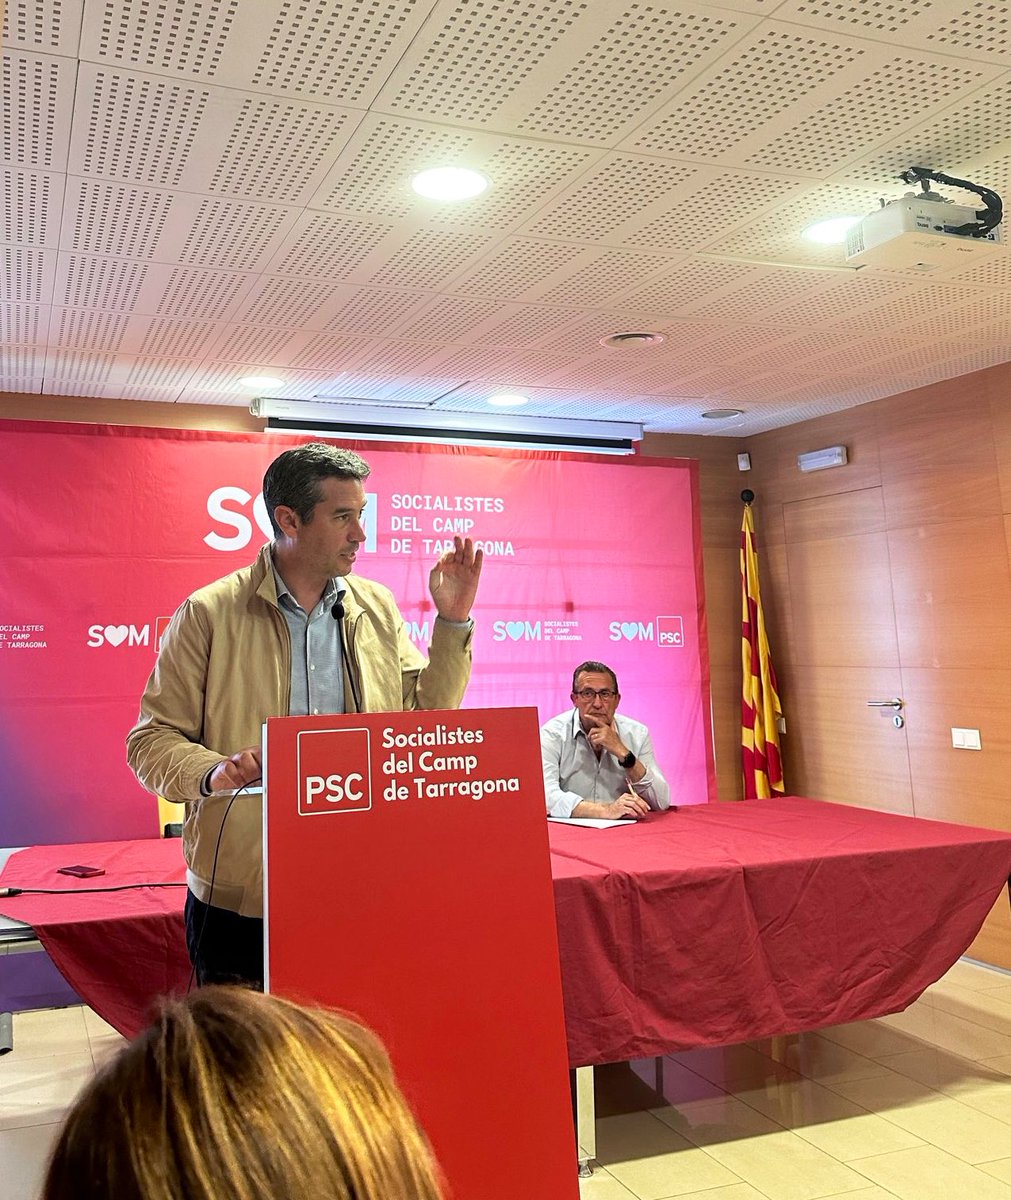 👉Consell de Federació del @PSCTarragona, preparant les eleccions catalanes del 12 de maig.

👍 “Unir i servir” amb @salvadorilla pel progrés i cohesió de Catalunya. #PSC #elvendrell #BaixPenedès